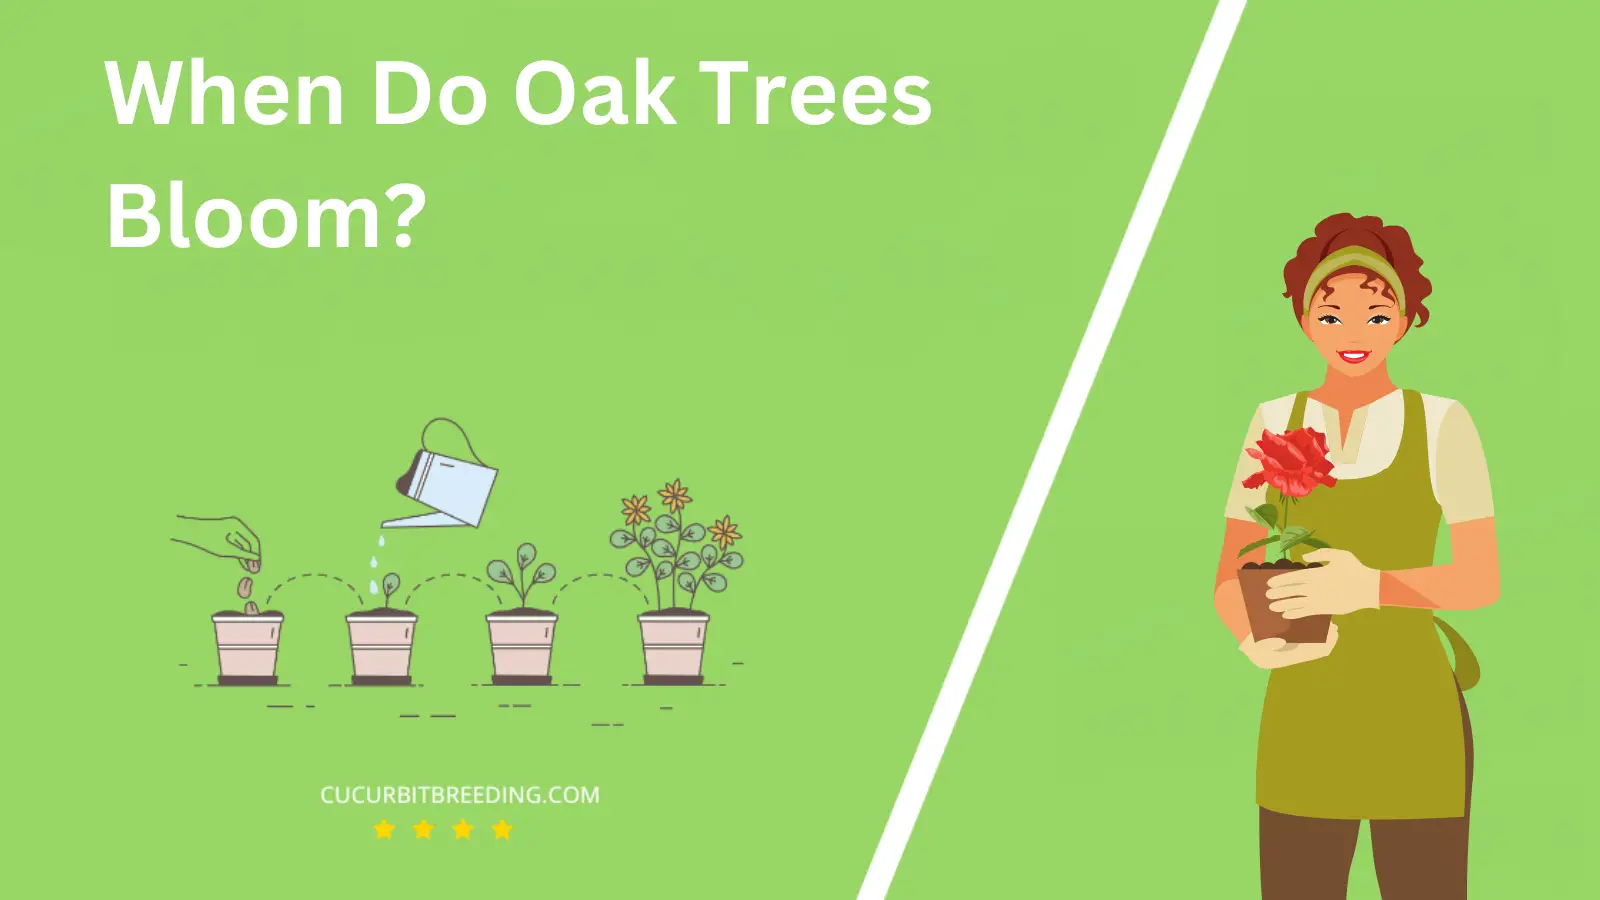 When Do Oak Trees Bloom?